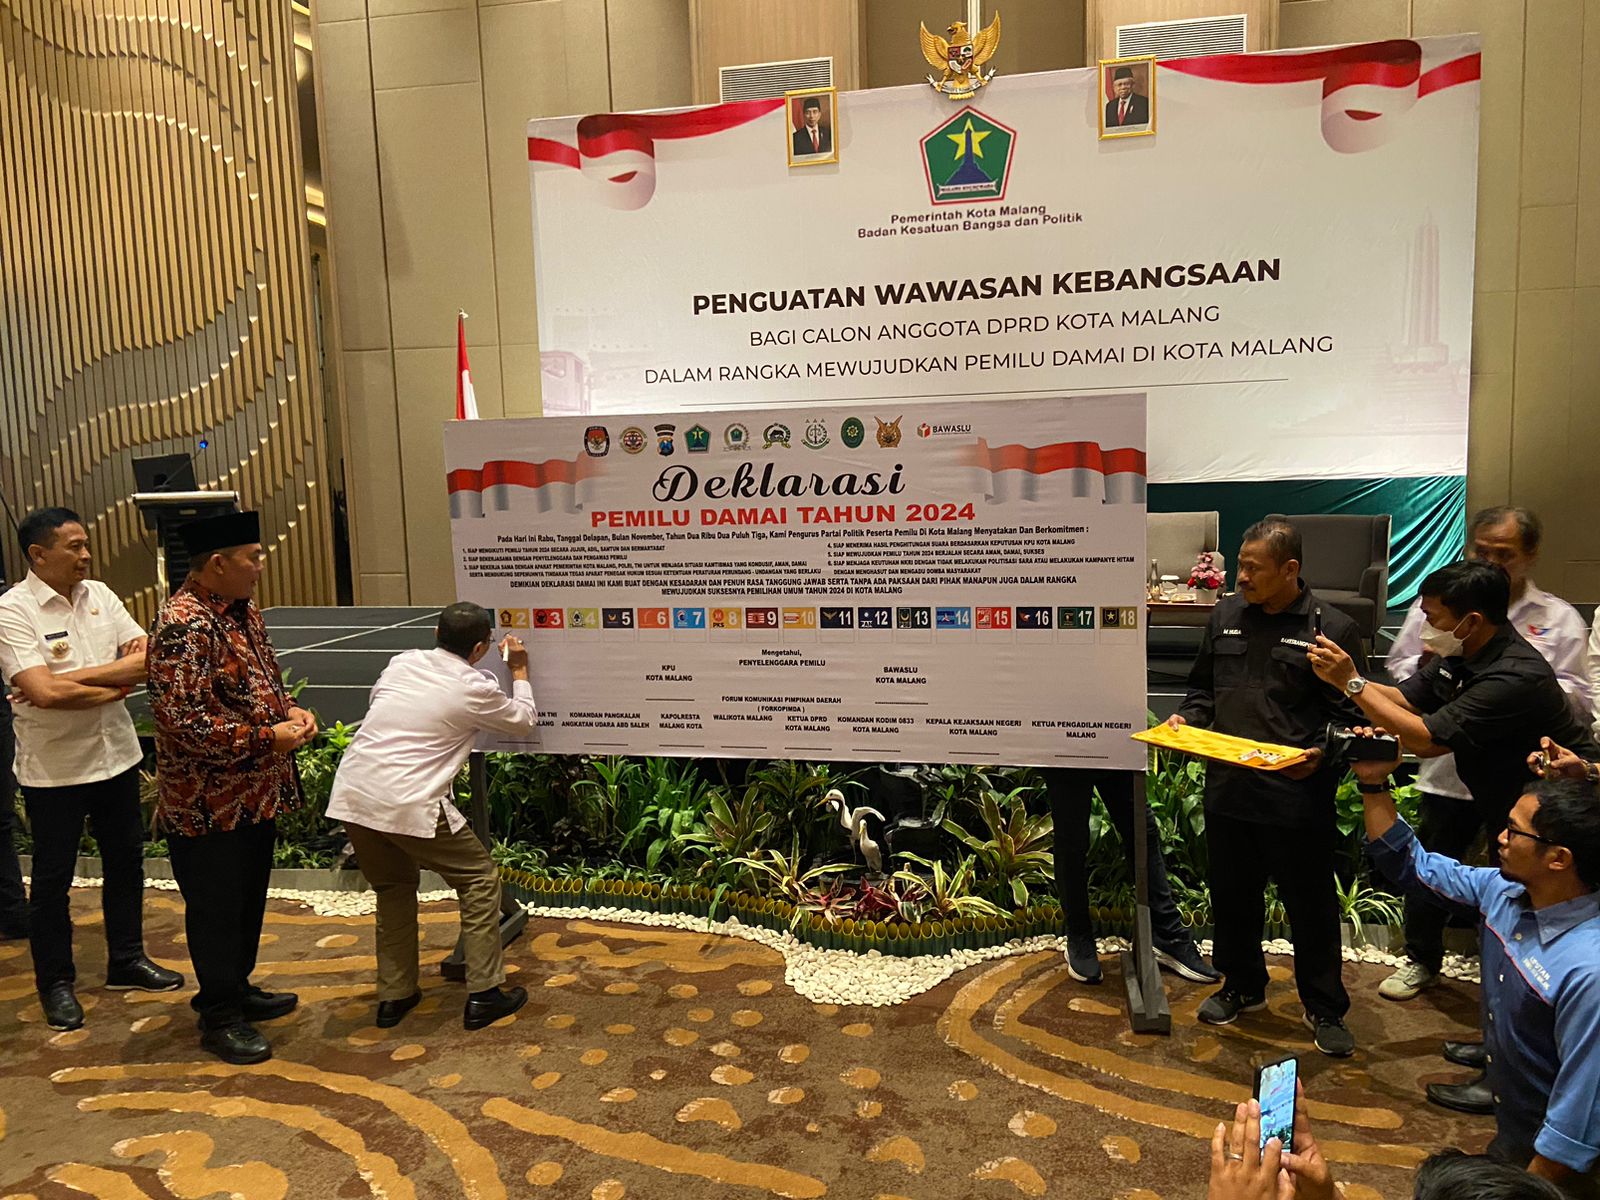 Ratusan Caleg Ikuti Deklarasi Pemilu Damai 2024, Ini Pesan Ketua DPRD Kota Malang